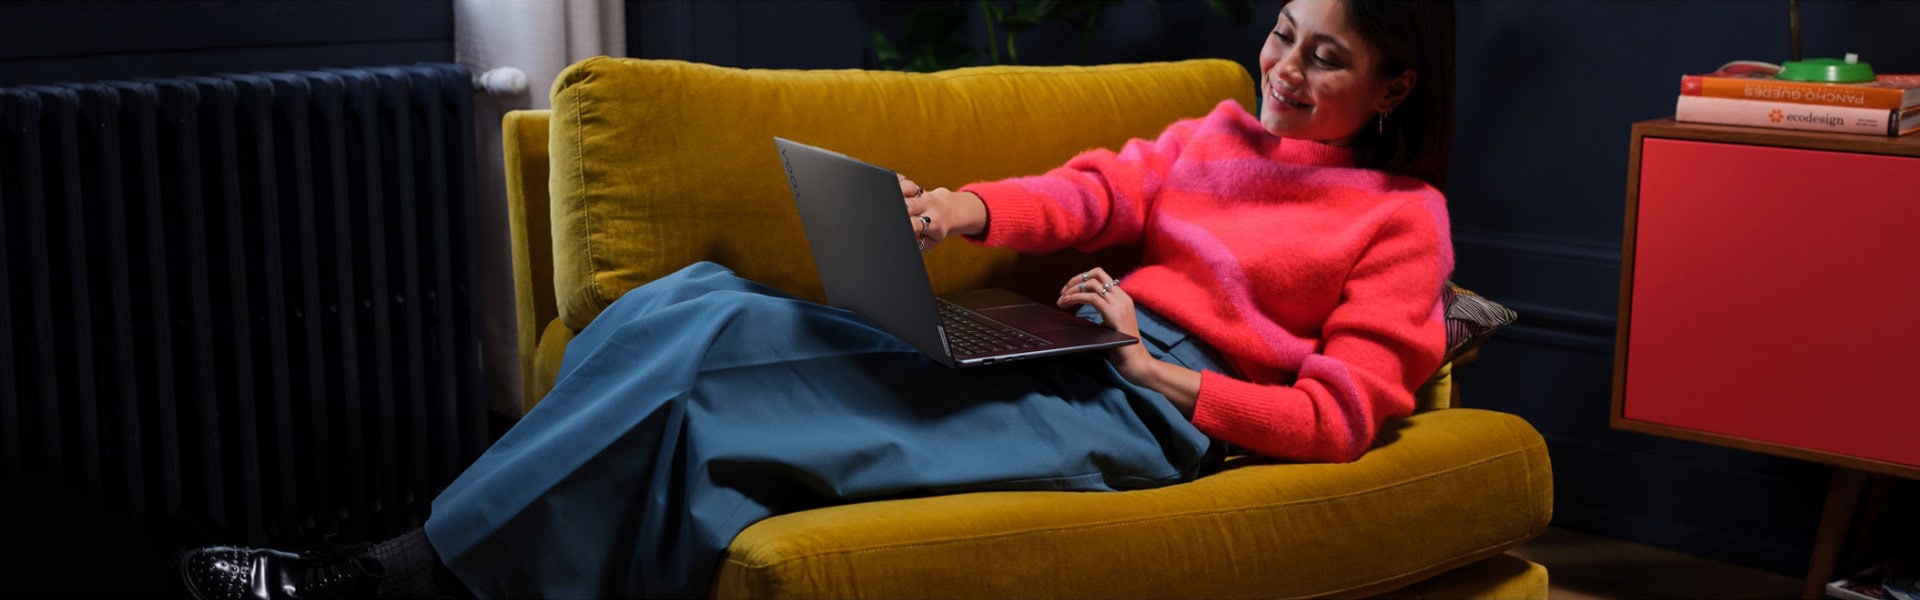 Жінка сидить у великому кріслі з ноутбуком Lenovo Yoga на колінах